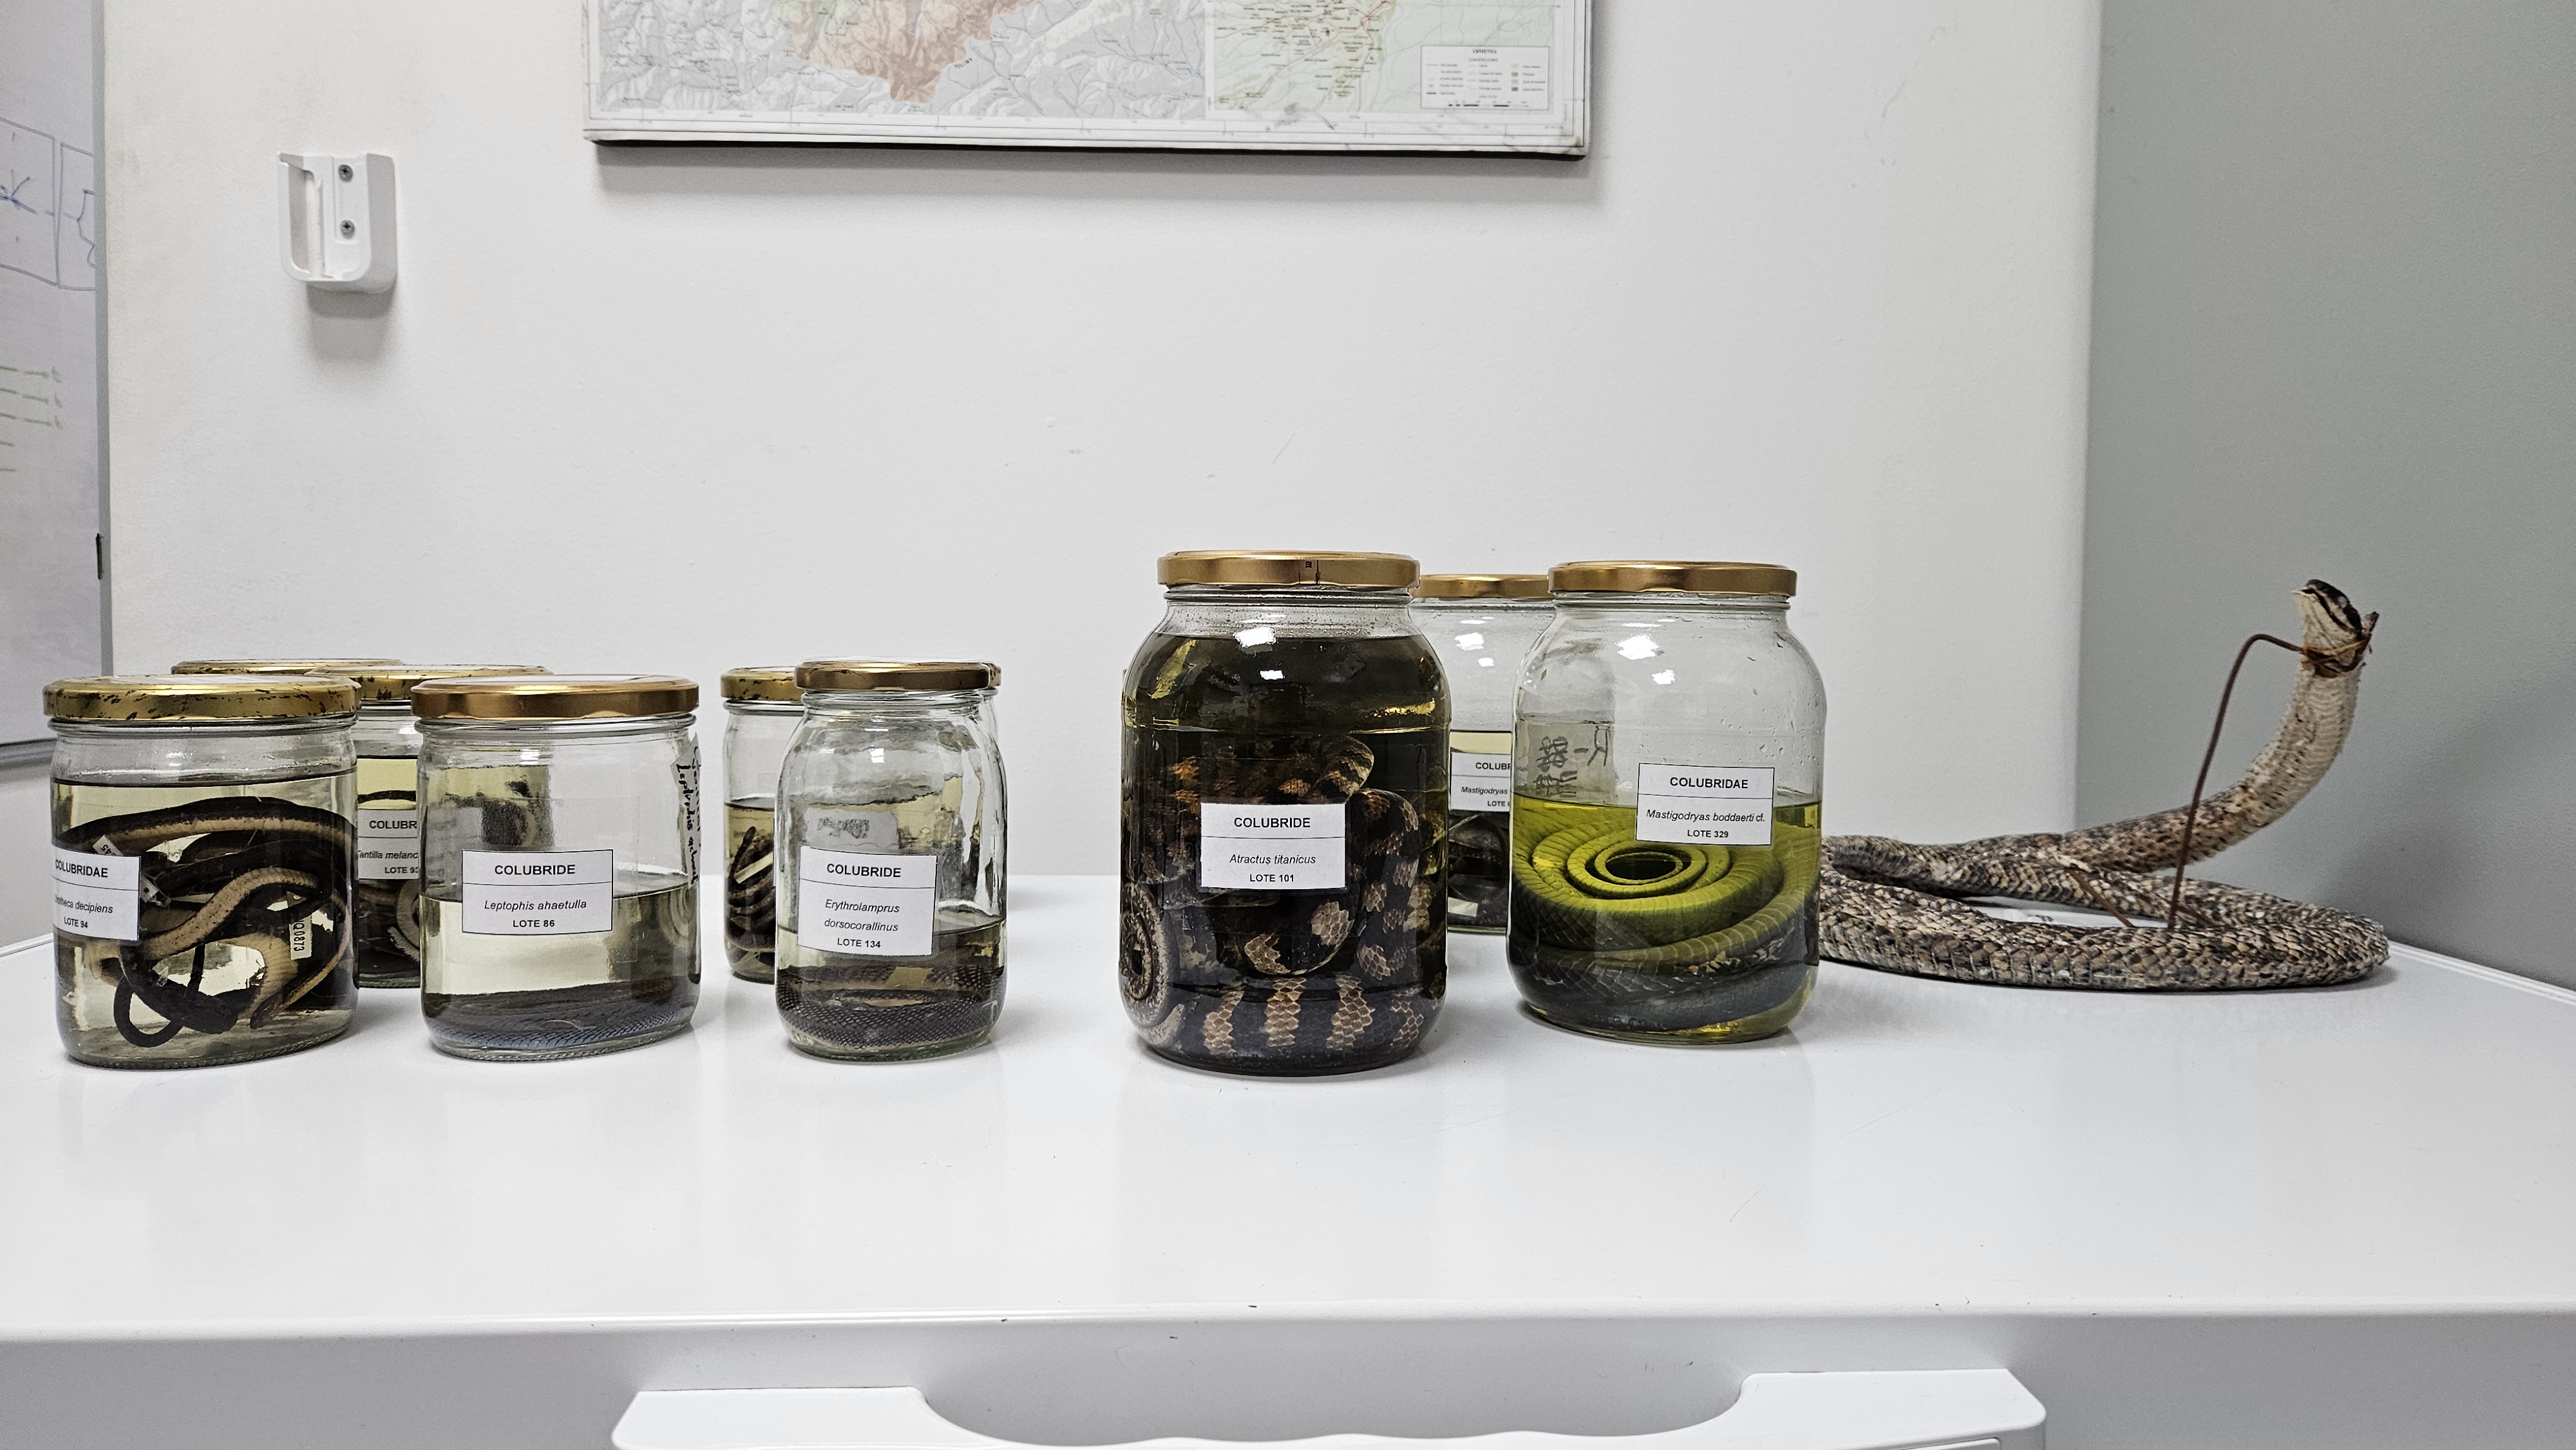 Colección de anfibios y reptiles de la UQ: una ventana importante de la fauna del departamento